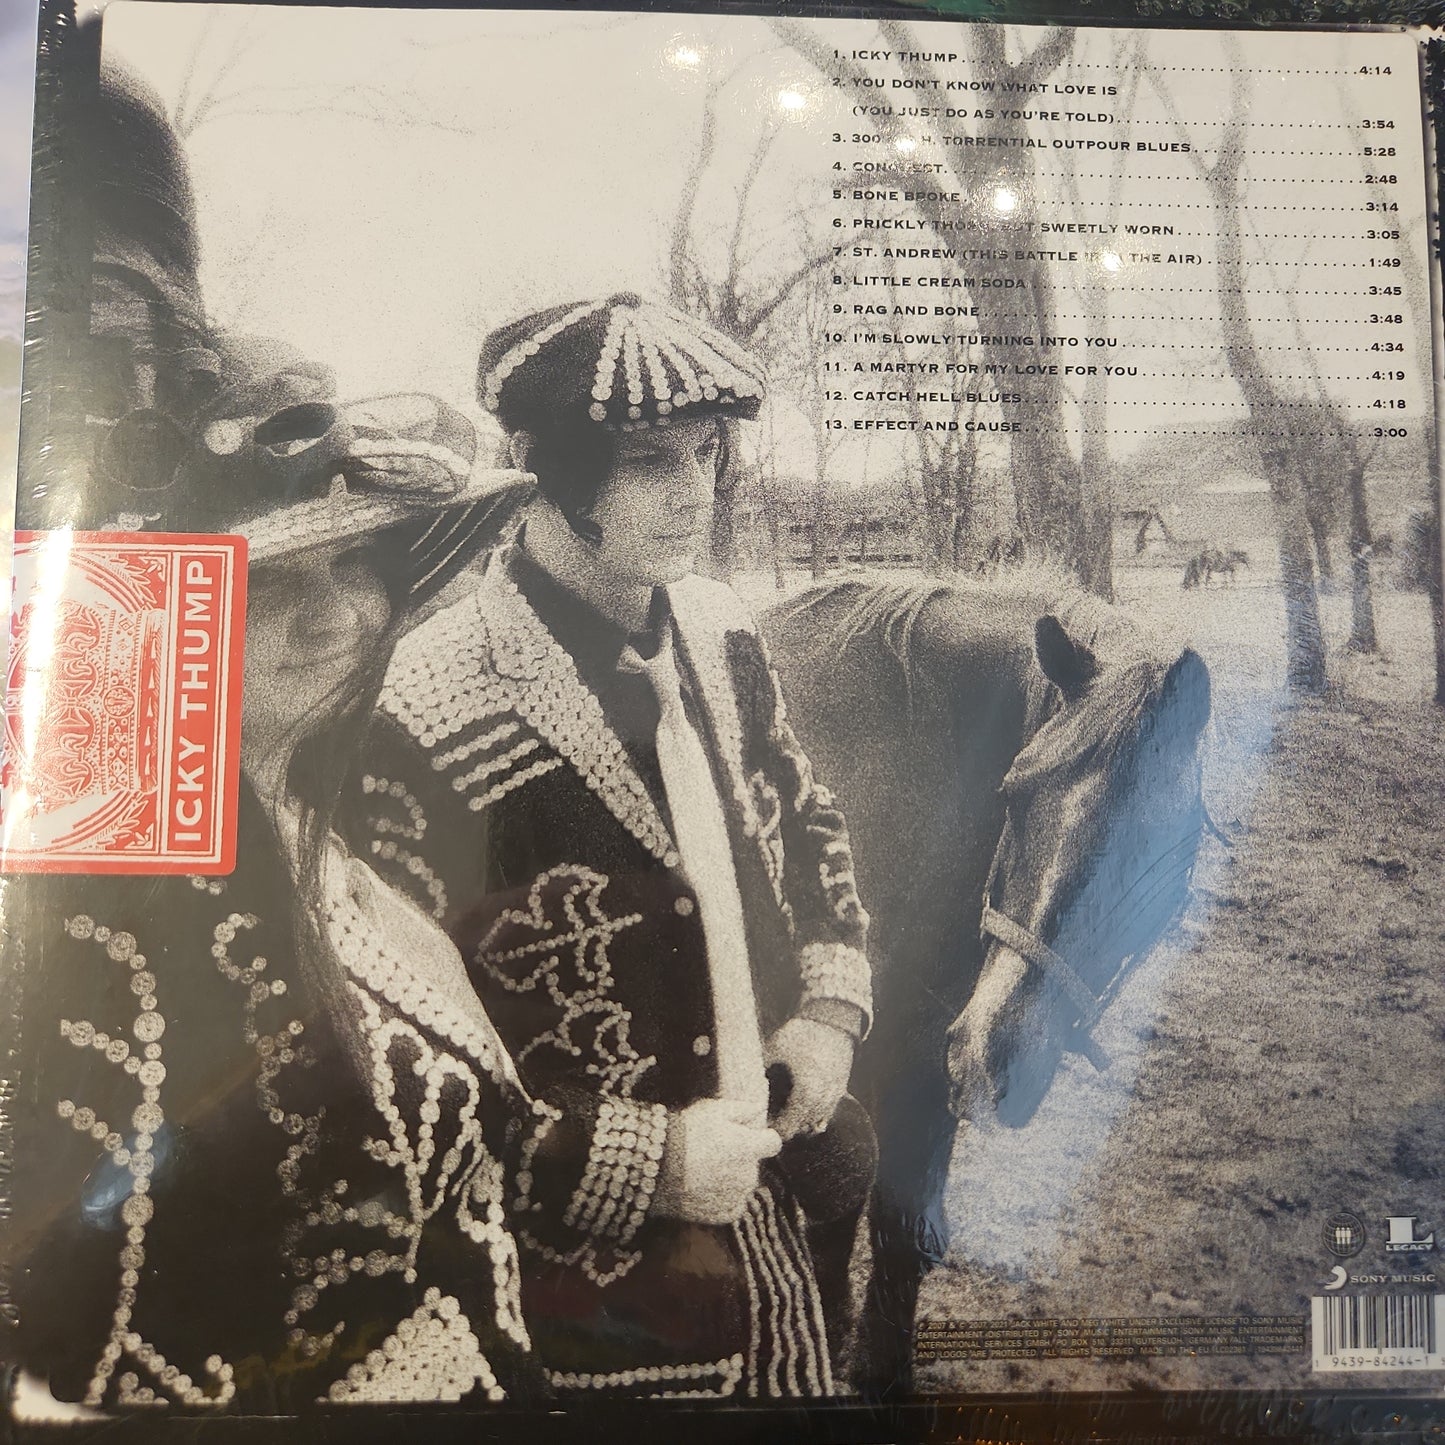 The White Stripes - Icky Thump - Vinyl LP